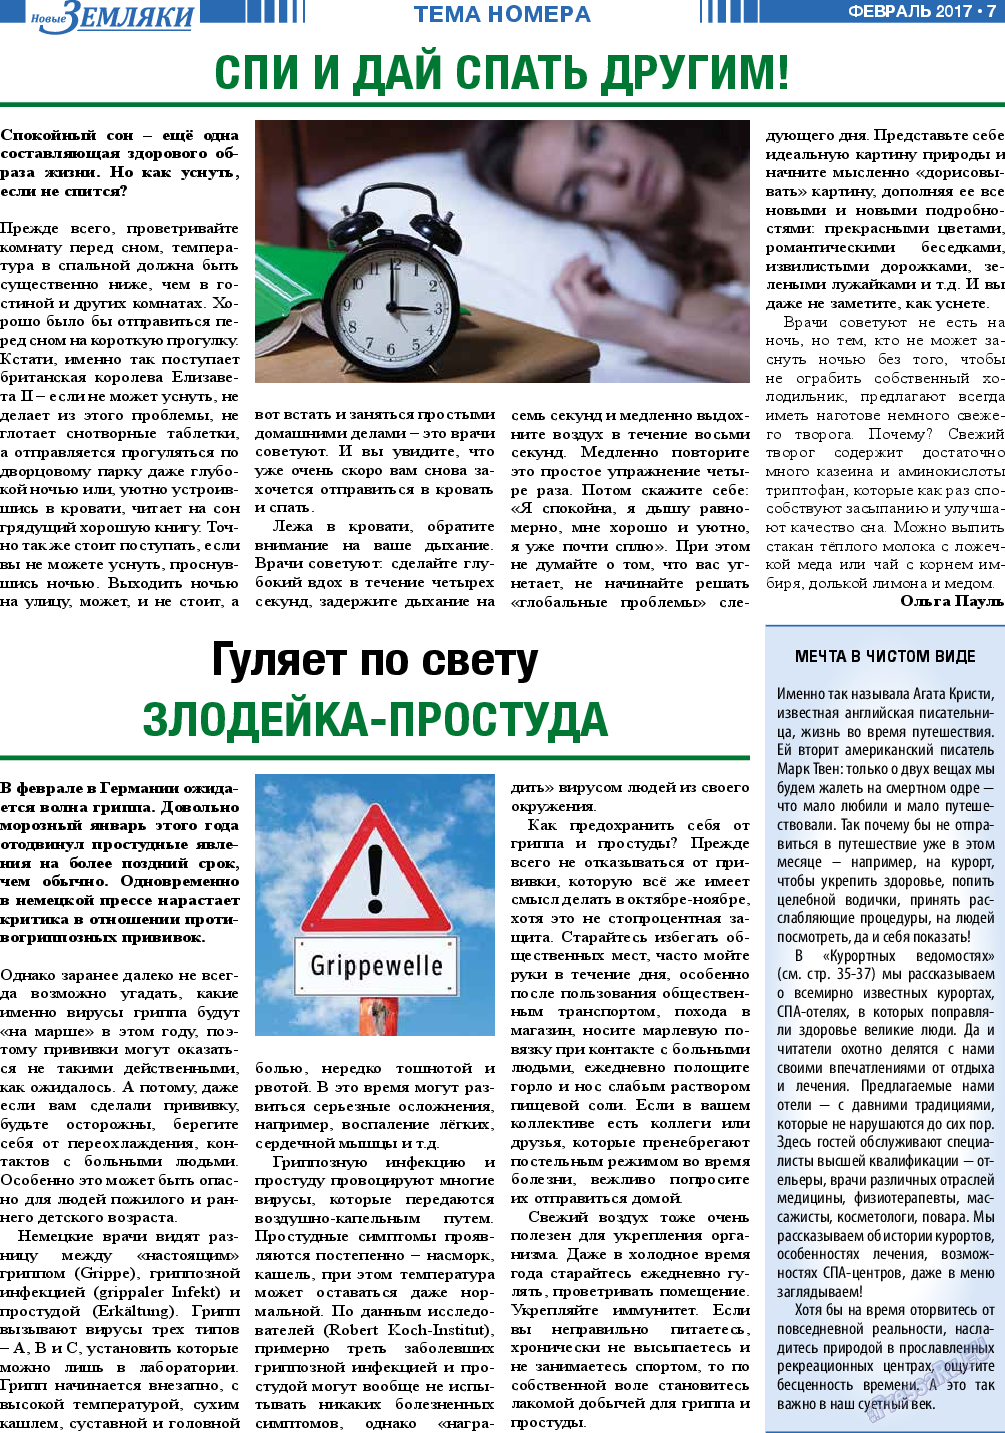 Новые Земляки, газета. 2017 №2 стр.7